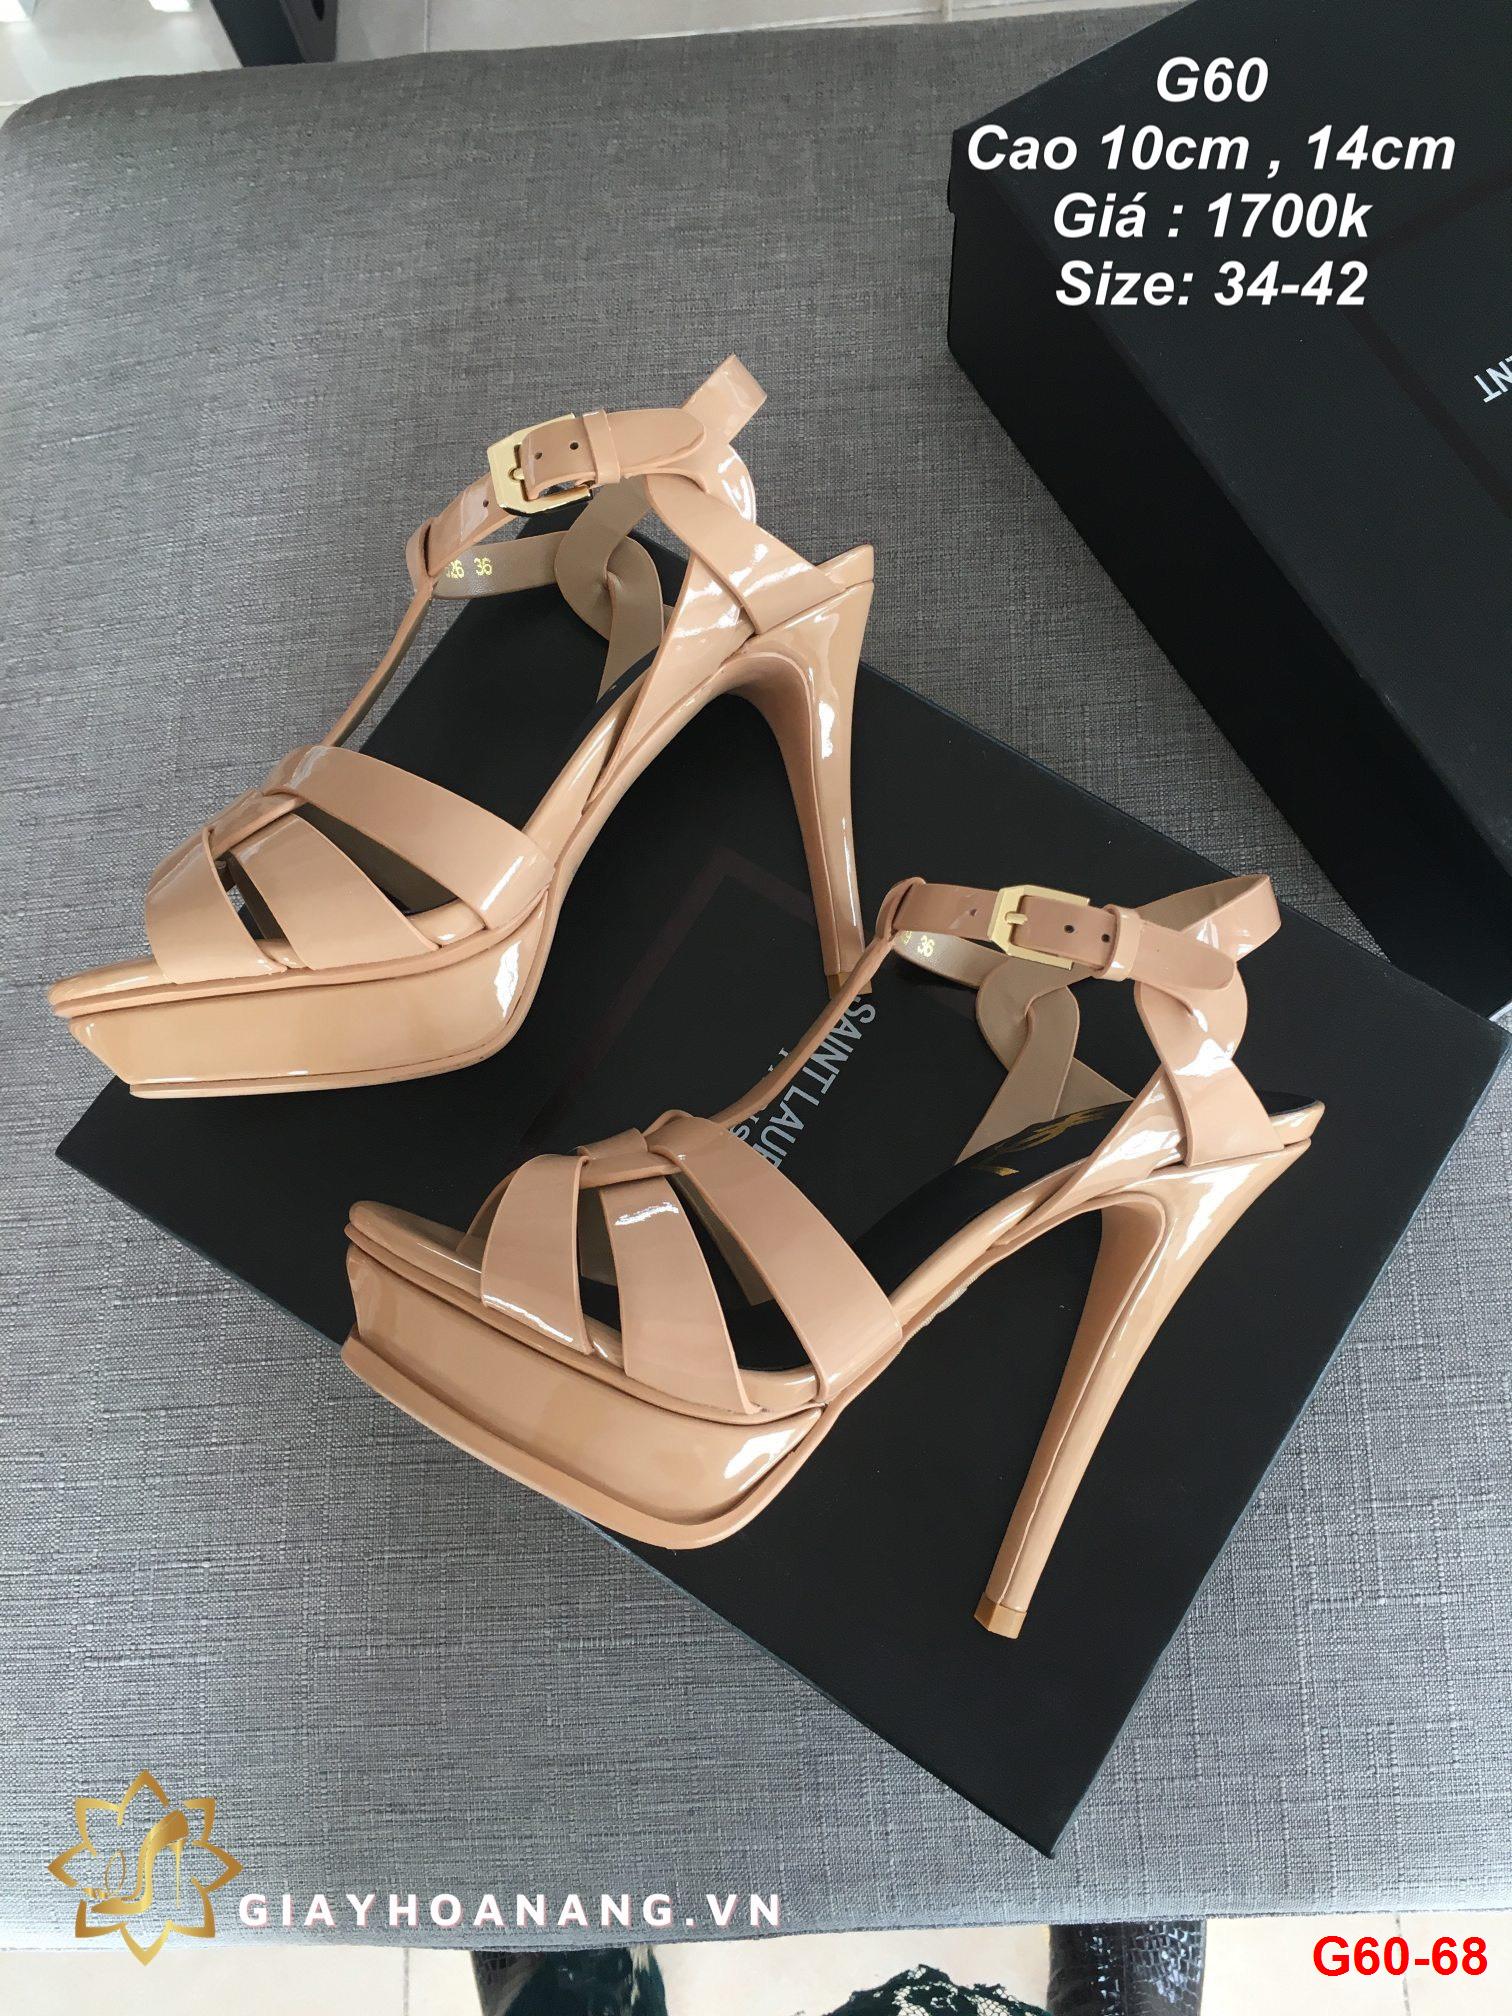 G60-68 Saint Laurent sandal cao 10cm  siêu cấp